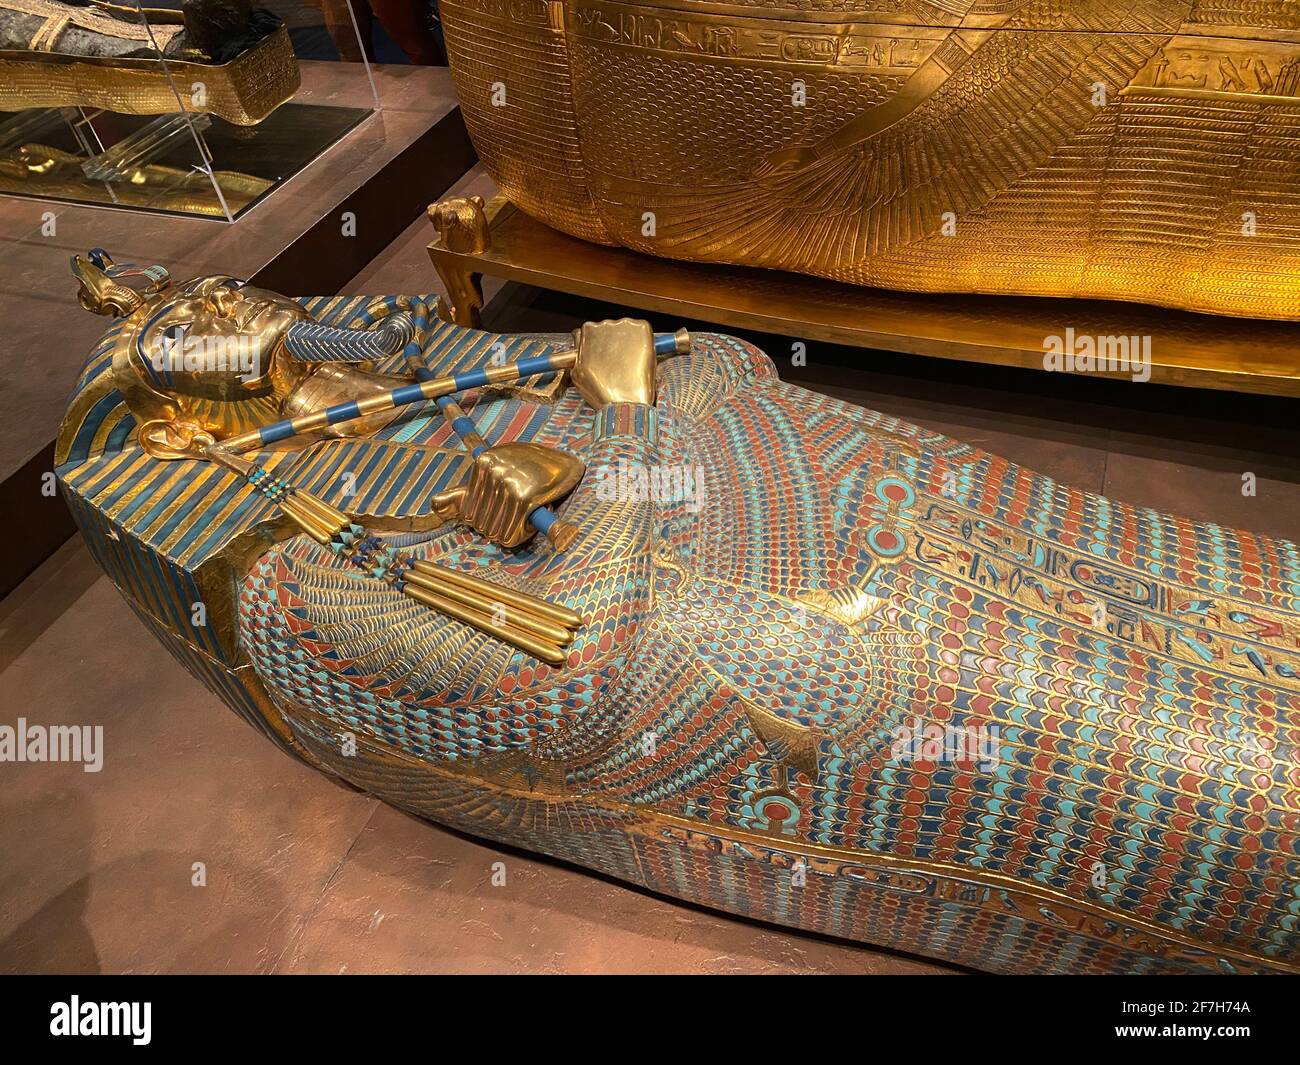 Ausstellung von Tutanchamun in Zürich während der Pandemiezeit. Grabschatz  von Ägypten pharao Tutanchamun. Der mittlere Sarg zeigt den König, der in  Feathe gehüllt ist Stockfotografie - Alamy